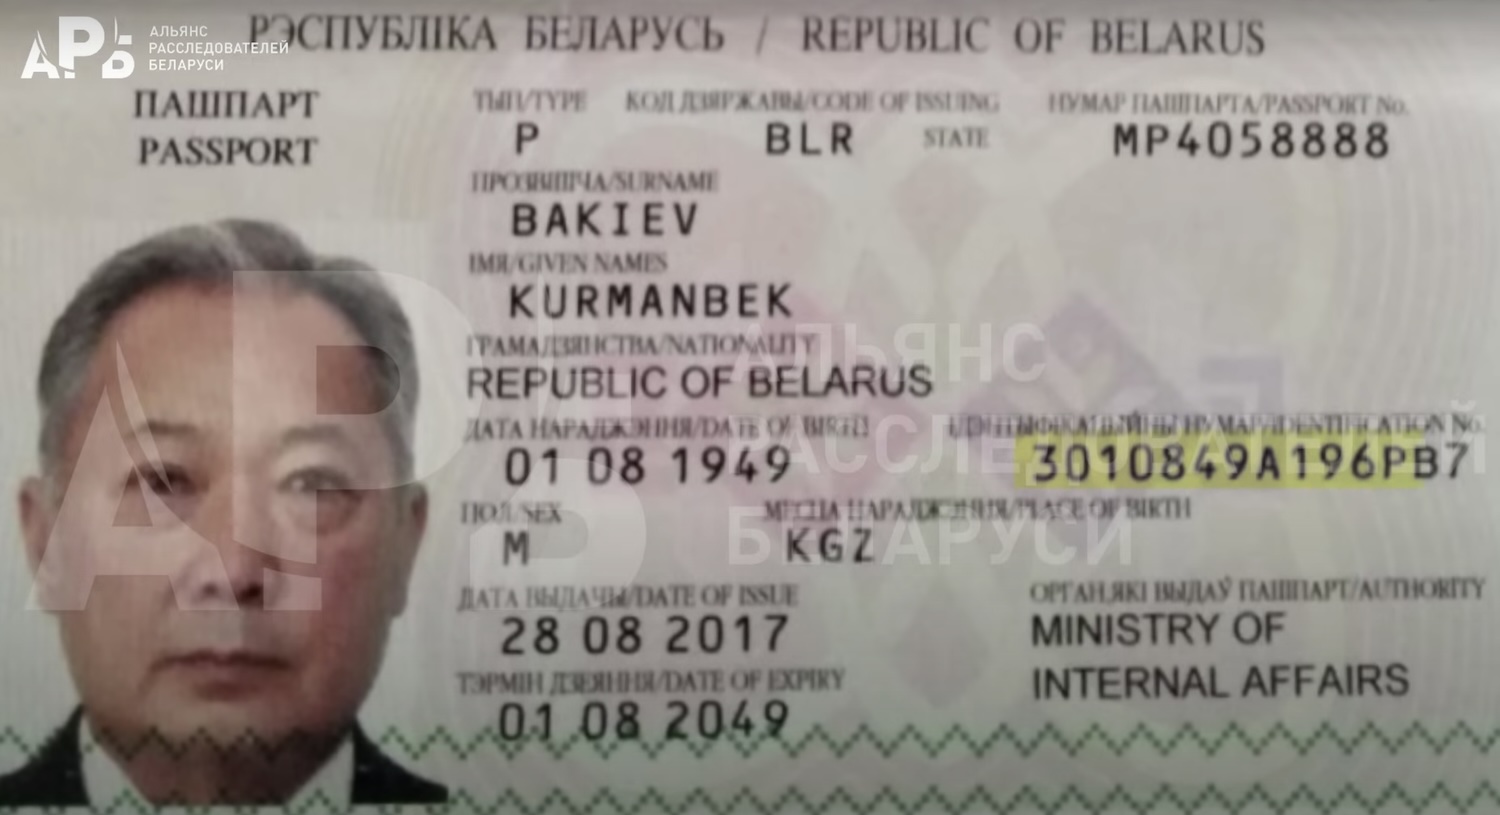 Два паспорта Бакиева: беларусские власти создают новые личности для клана беглого президента Кыргызстана - расследование